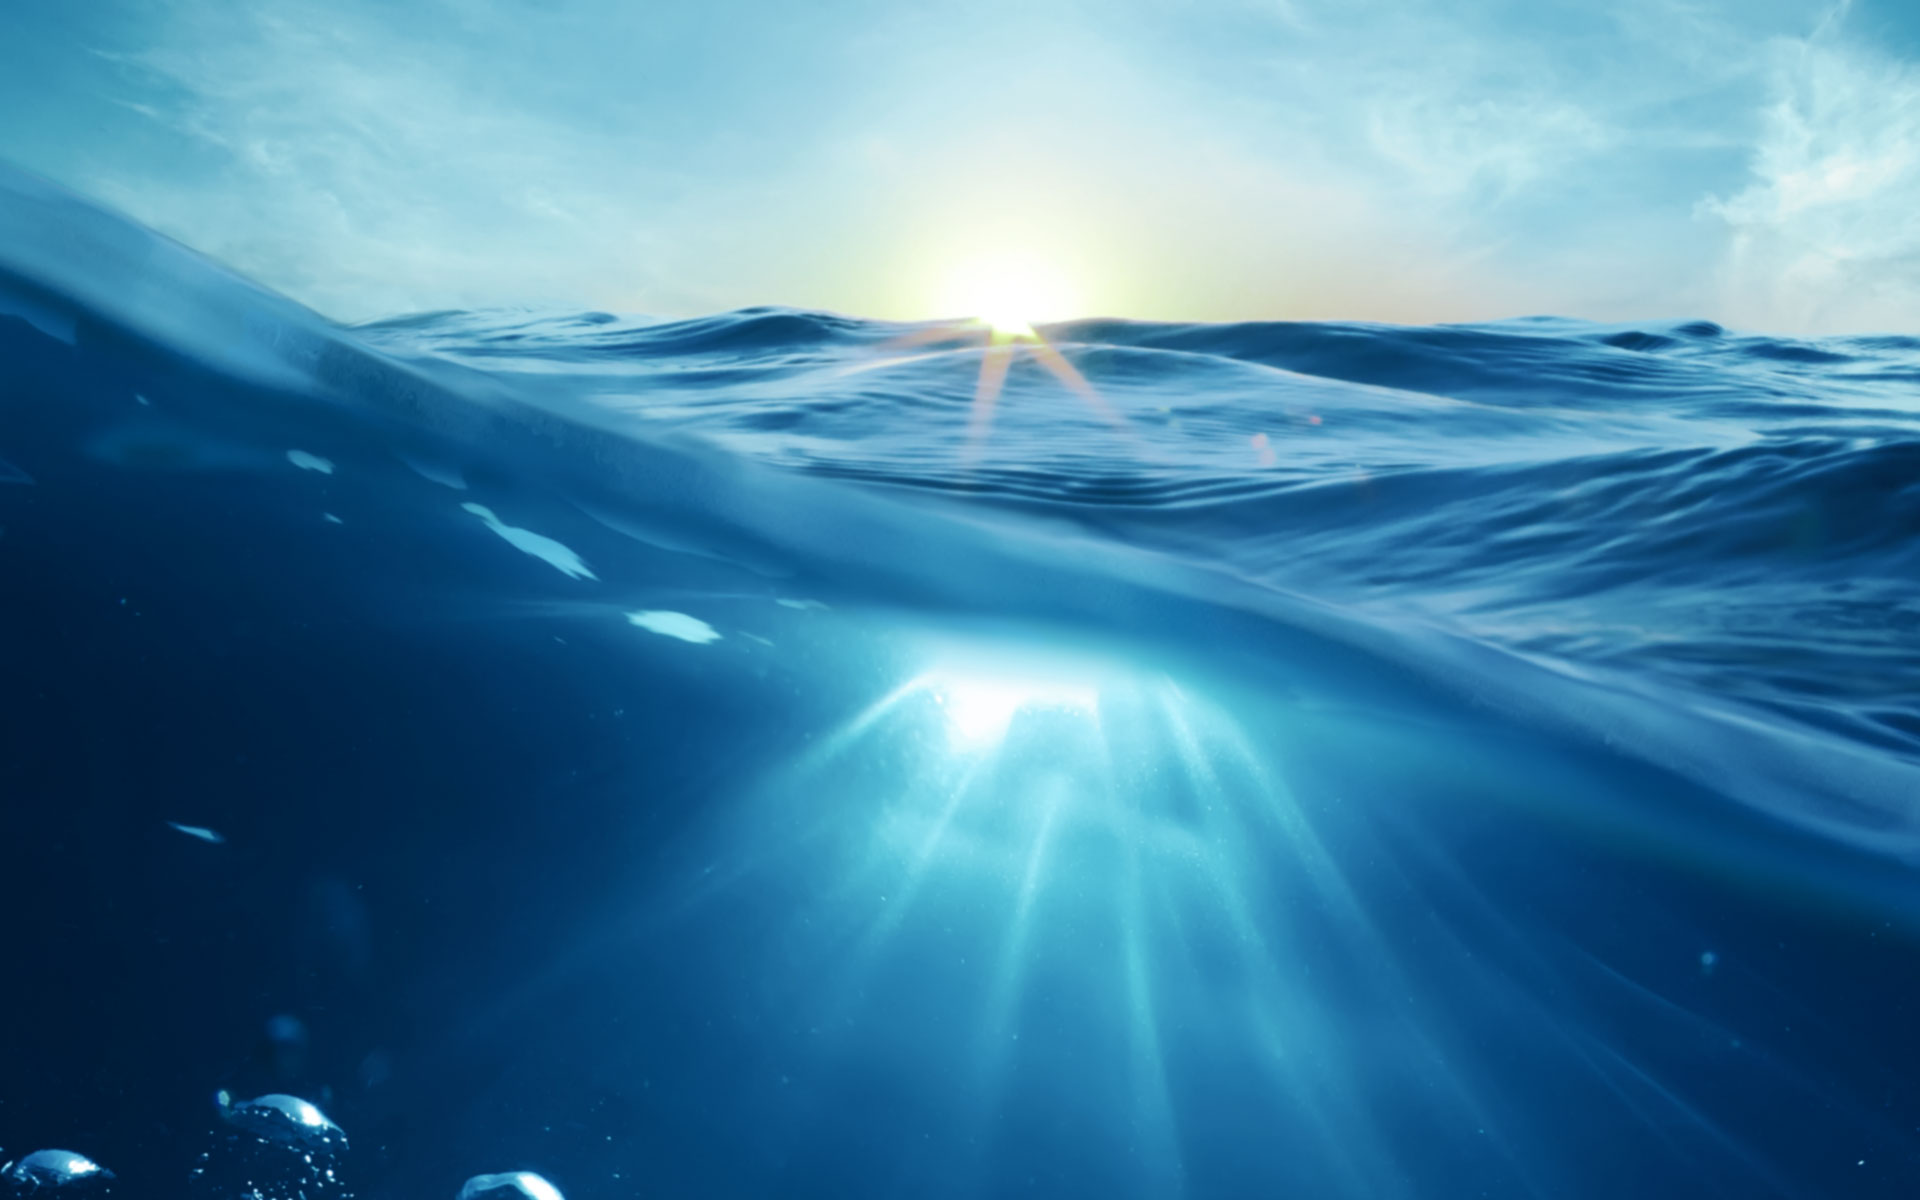 Скачать обои бесплатно Море, Океан, Синий, Солнечный Луч, Земля/природа картинка на рабочий стол ПК